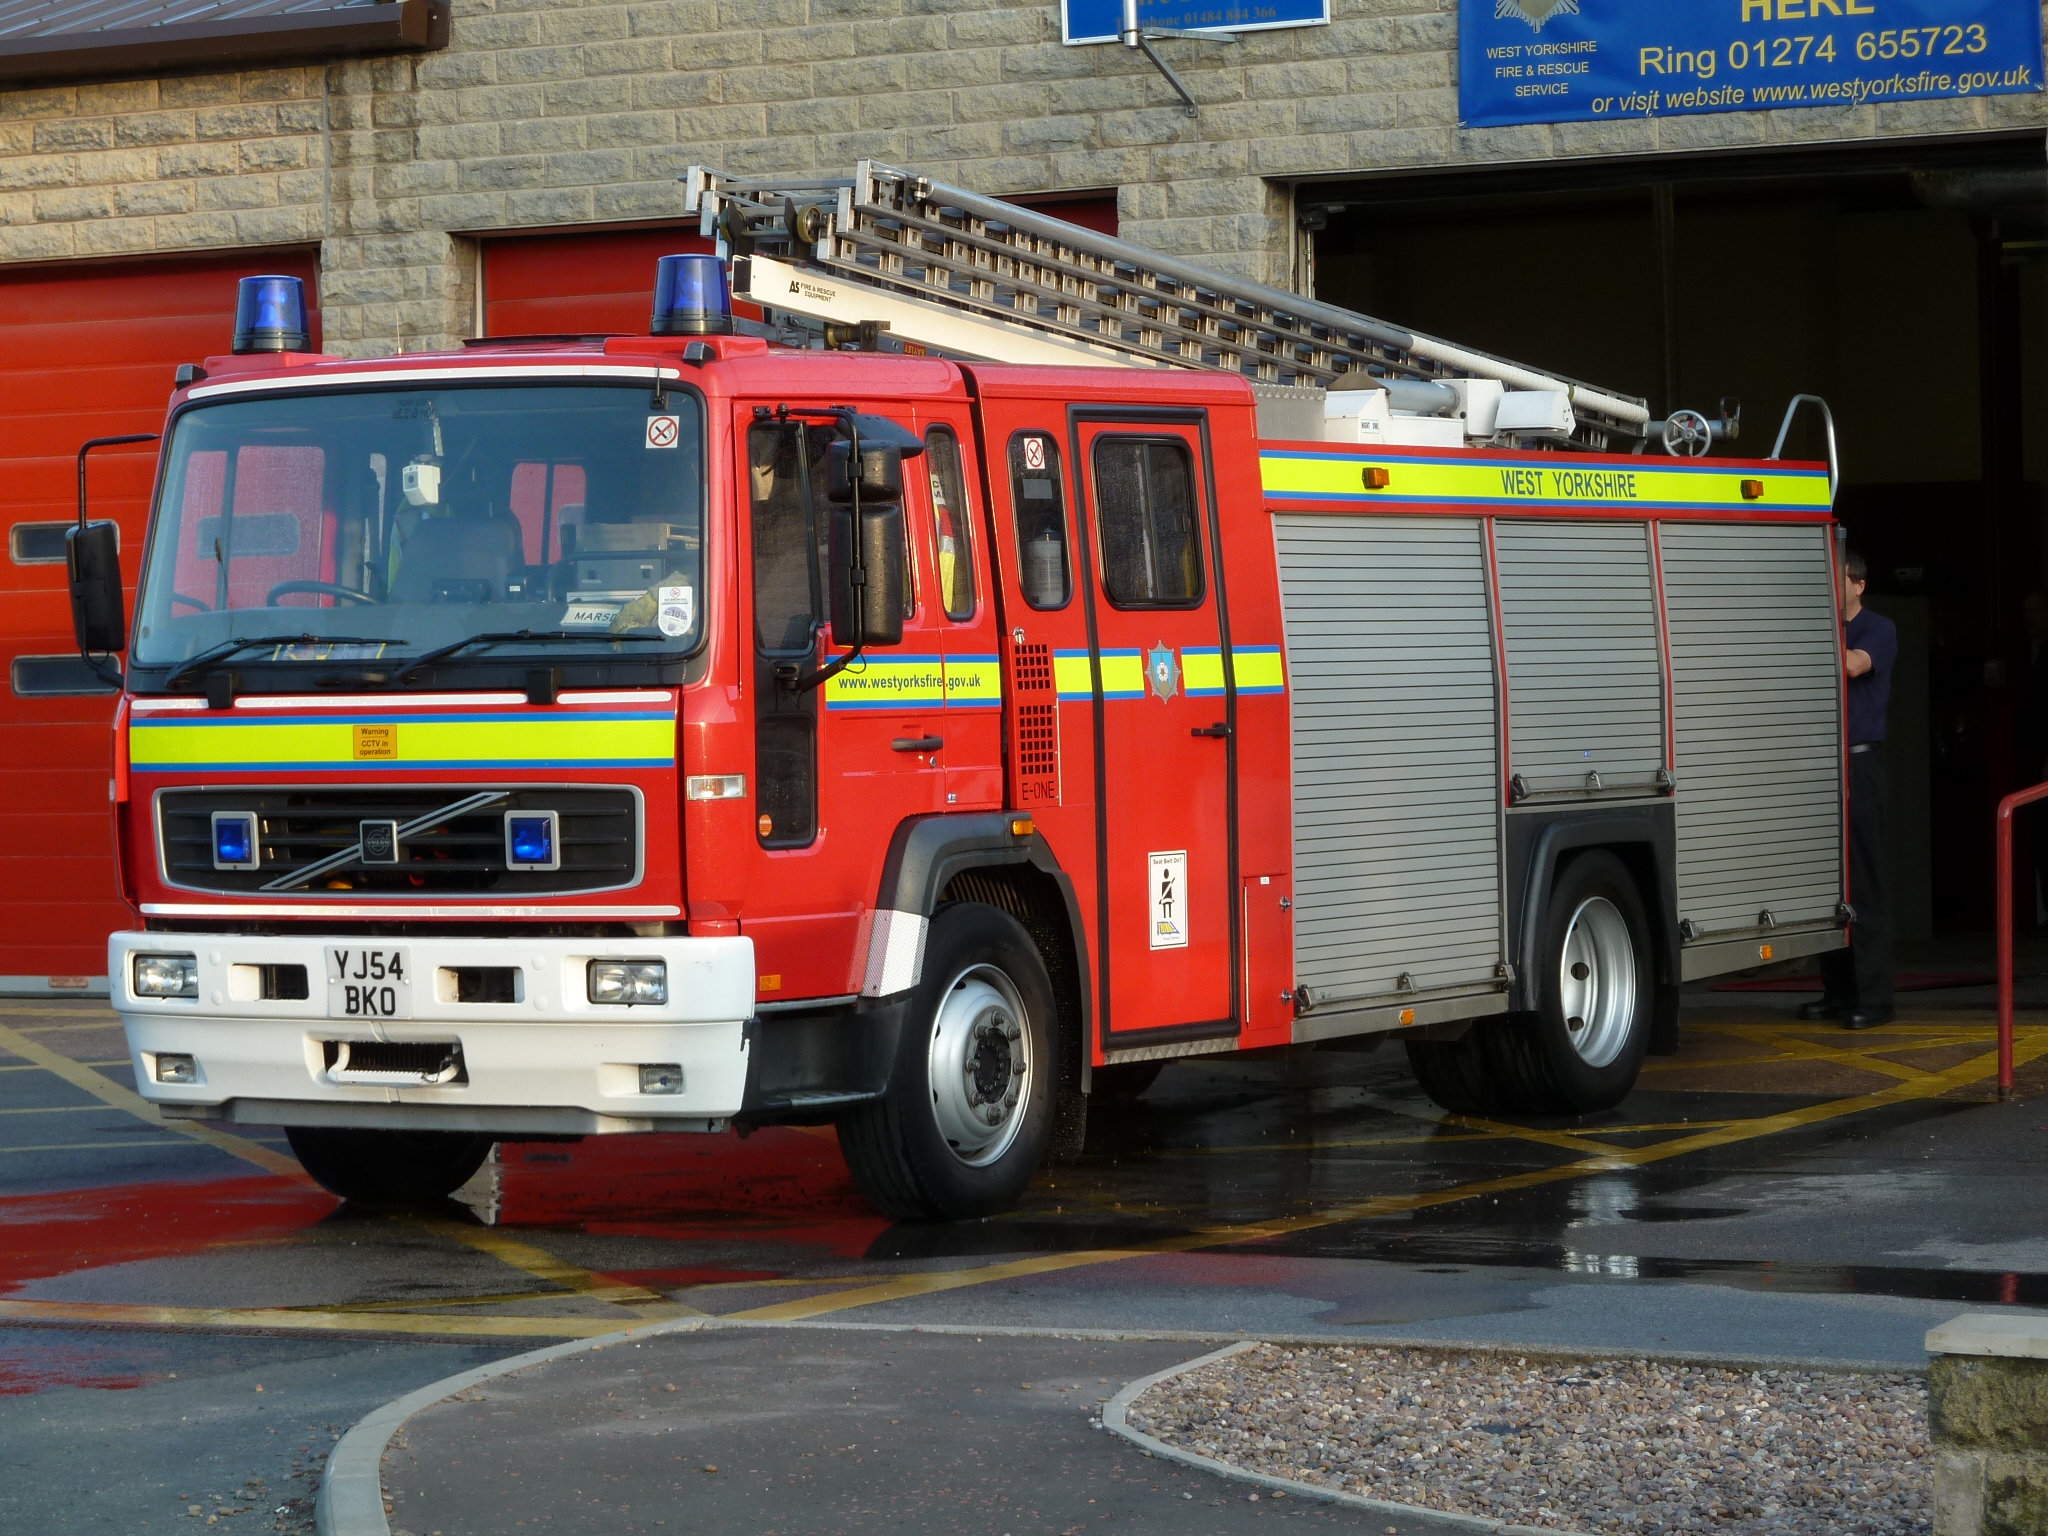 YJ54 BKO - West Yorkshire (Marsden) Volvo fire engine | Flickr ...